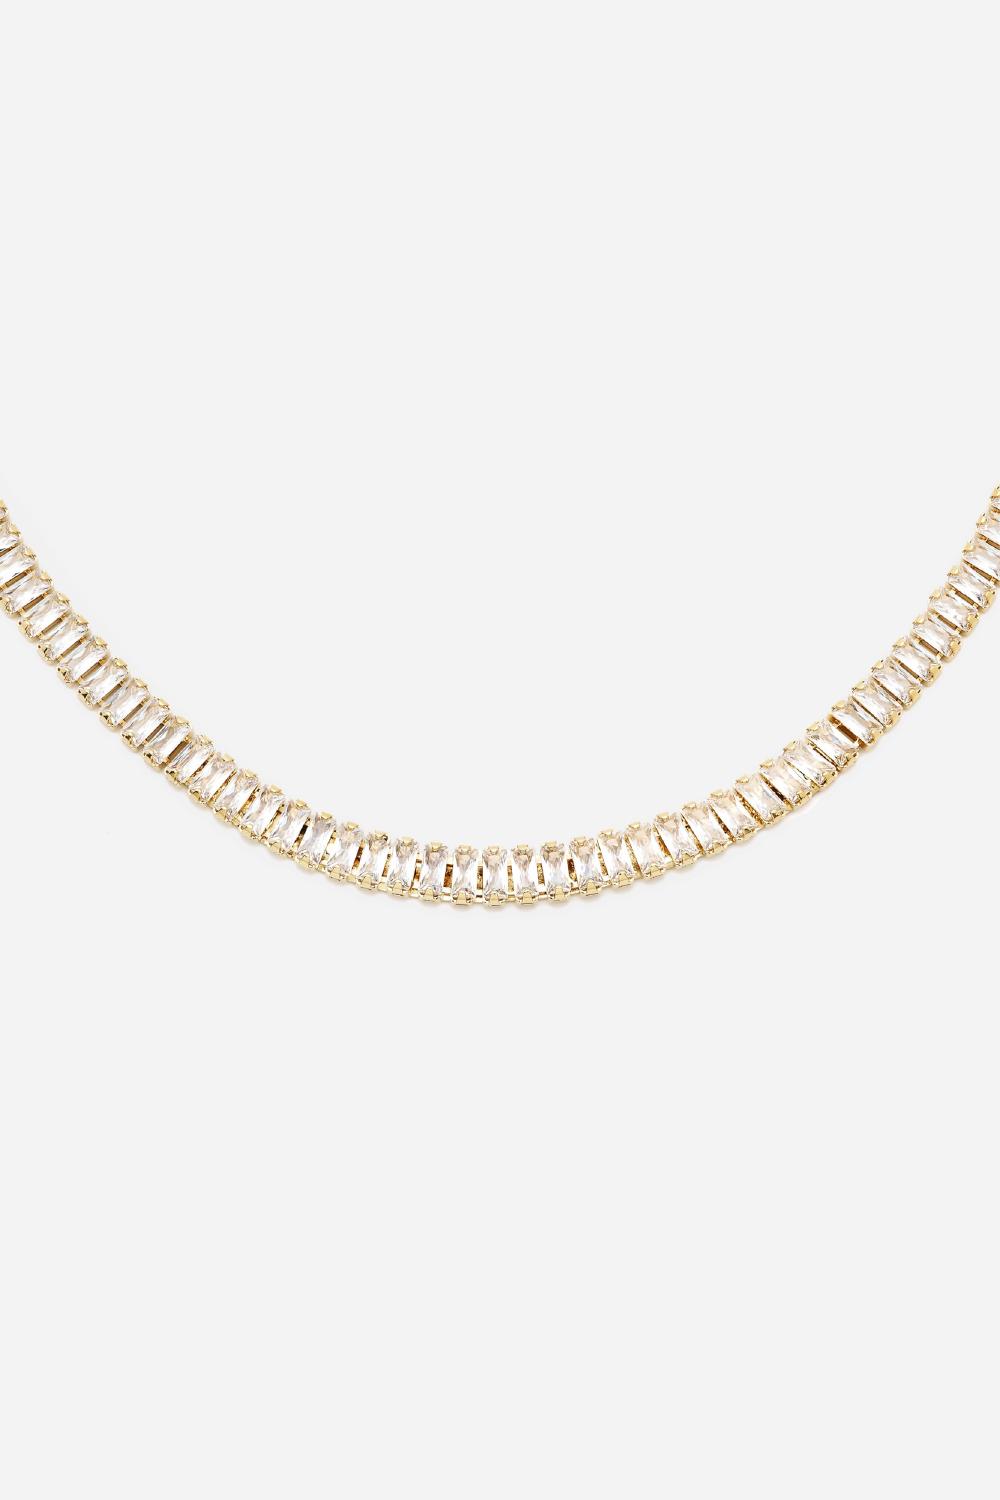 Baguette Necklace, Women, Gold